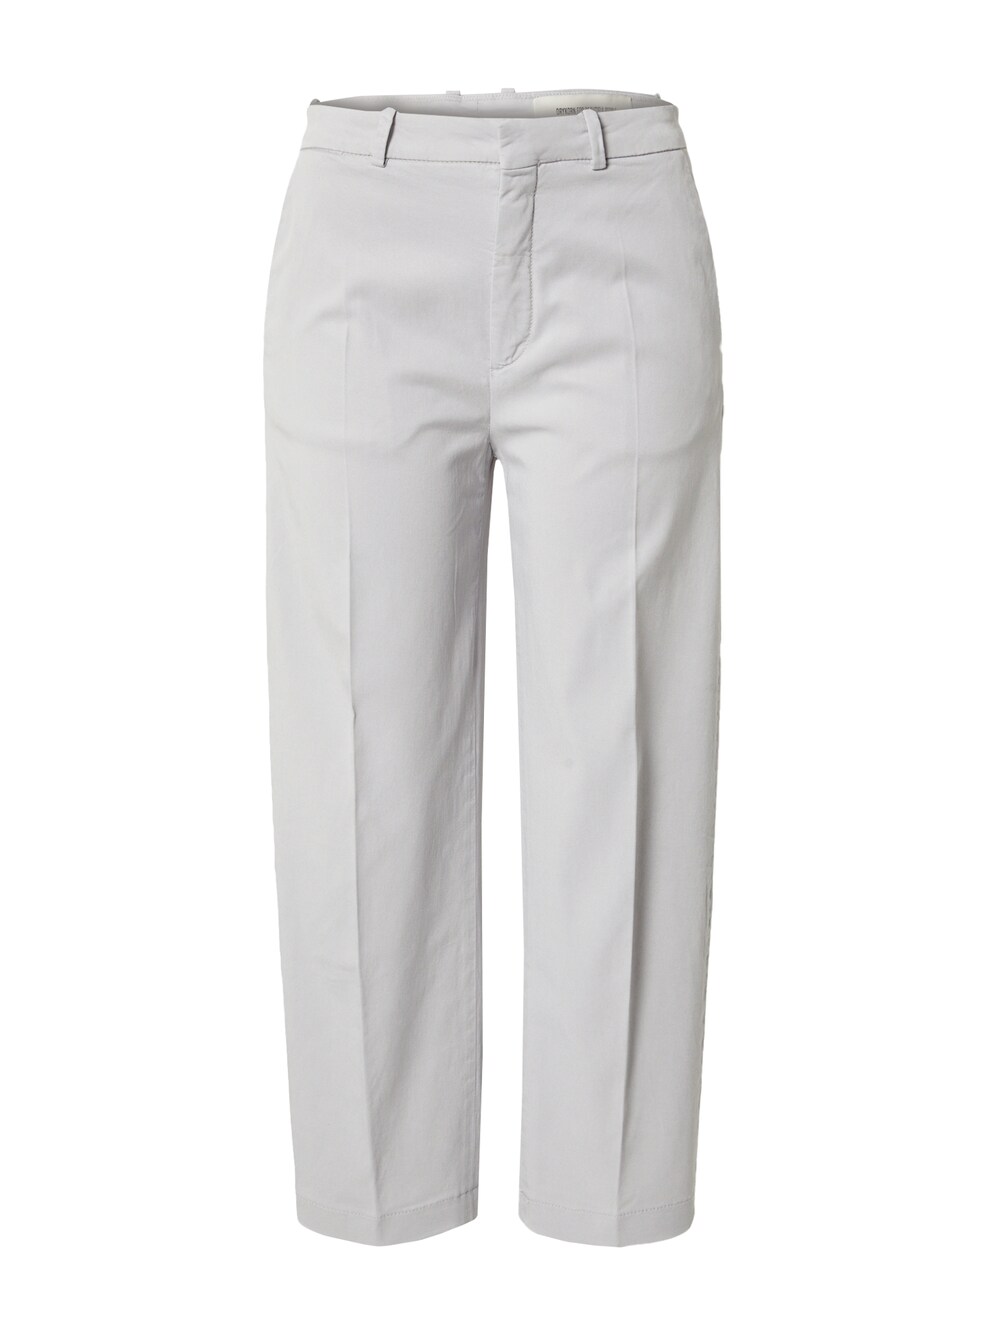 Обычные плиссированные брюки Drykorn SERIOUS, светло-серый